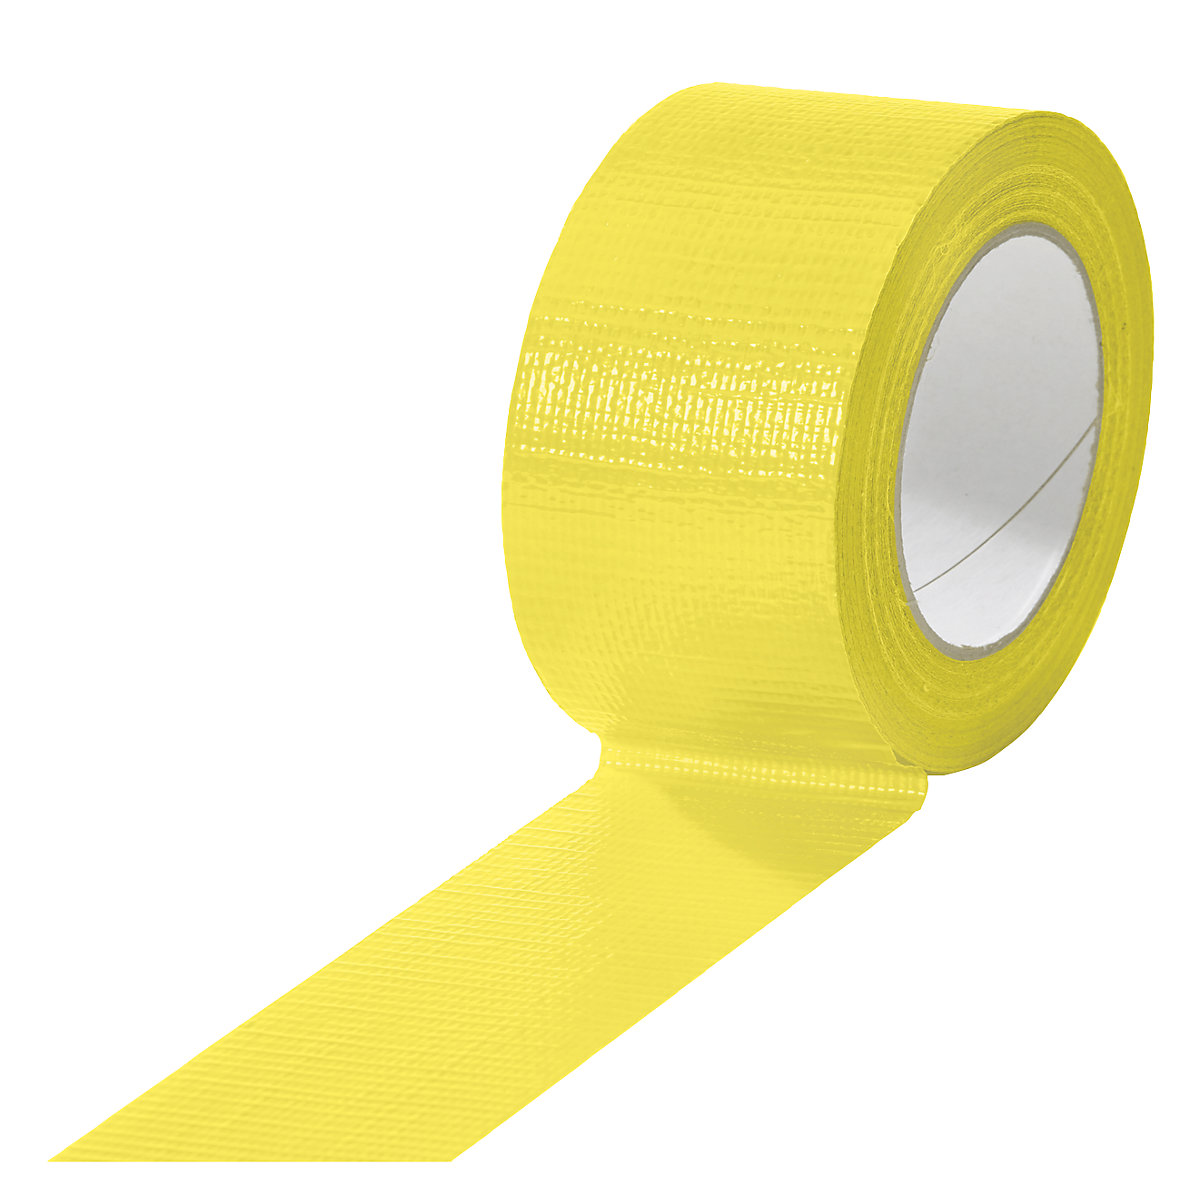 Gewebeband, in verschiedenen Farben, VE 18 Rollen, gelb, Bandbreite 50 mm-19